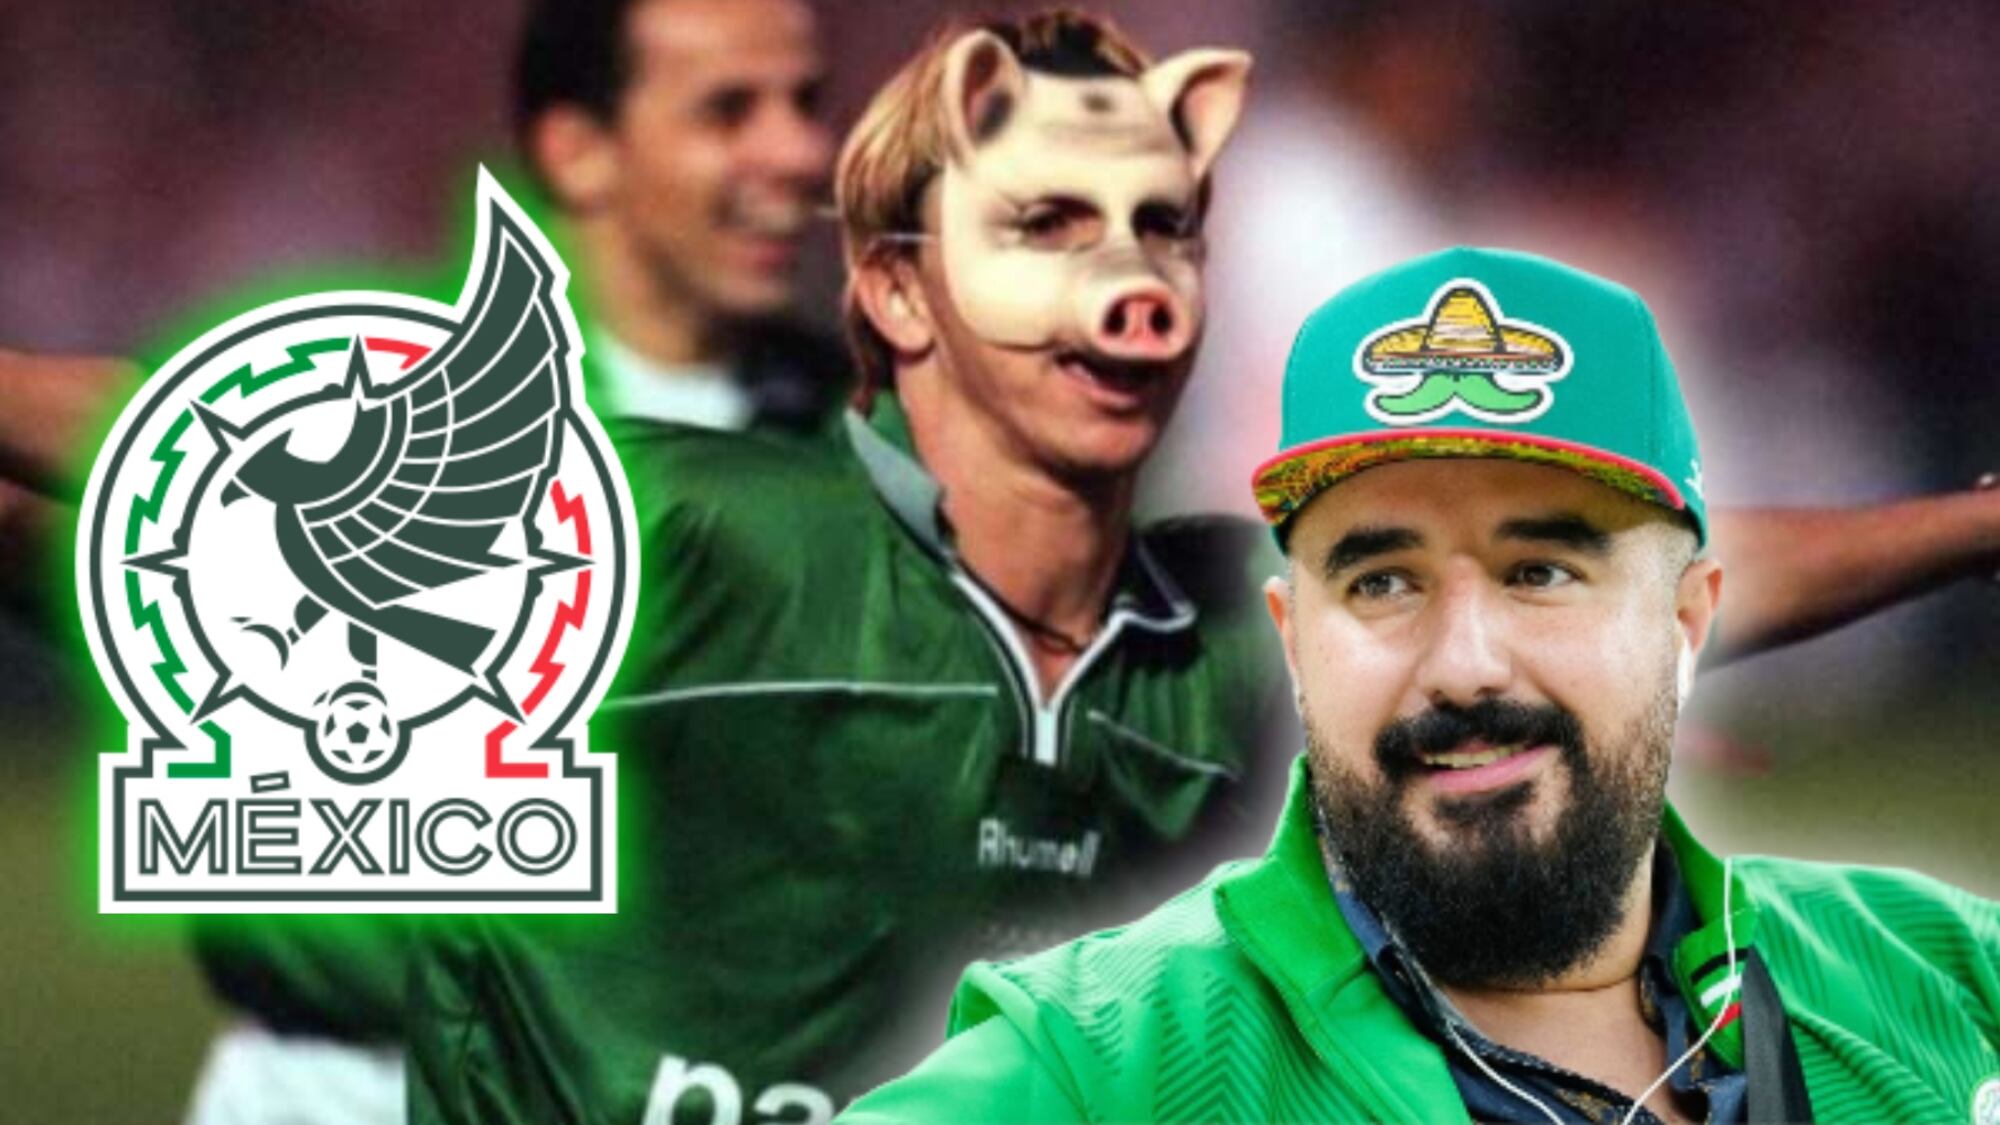 El delantero mexicano más 'cochinón' de la selección mexicana, según Álvaro Morales